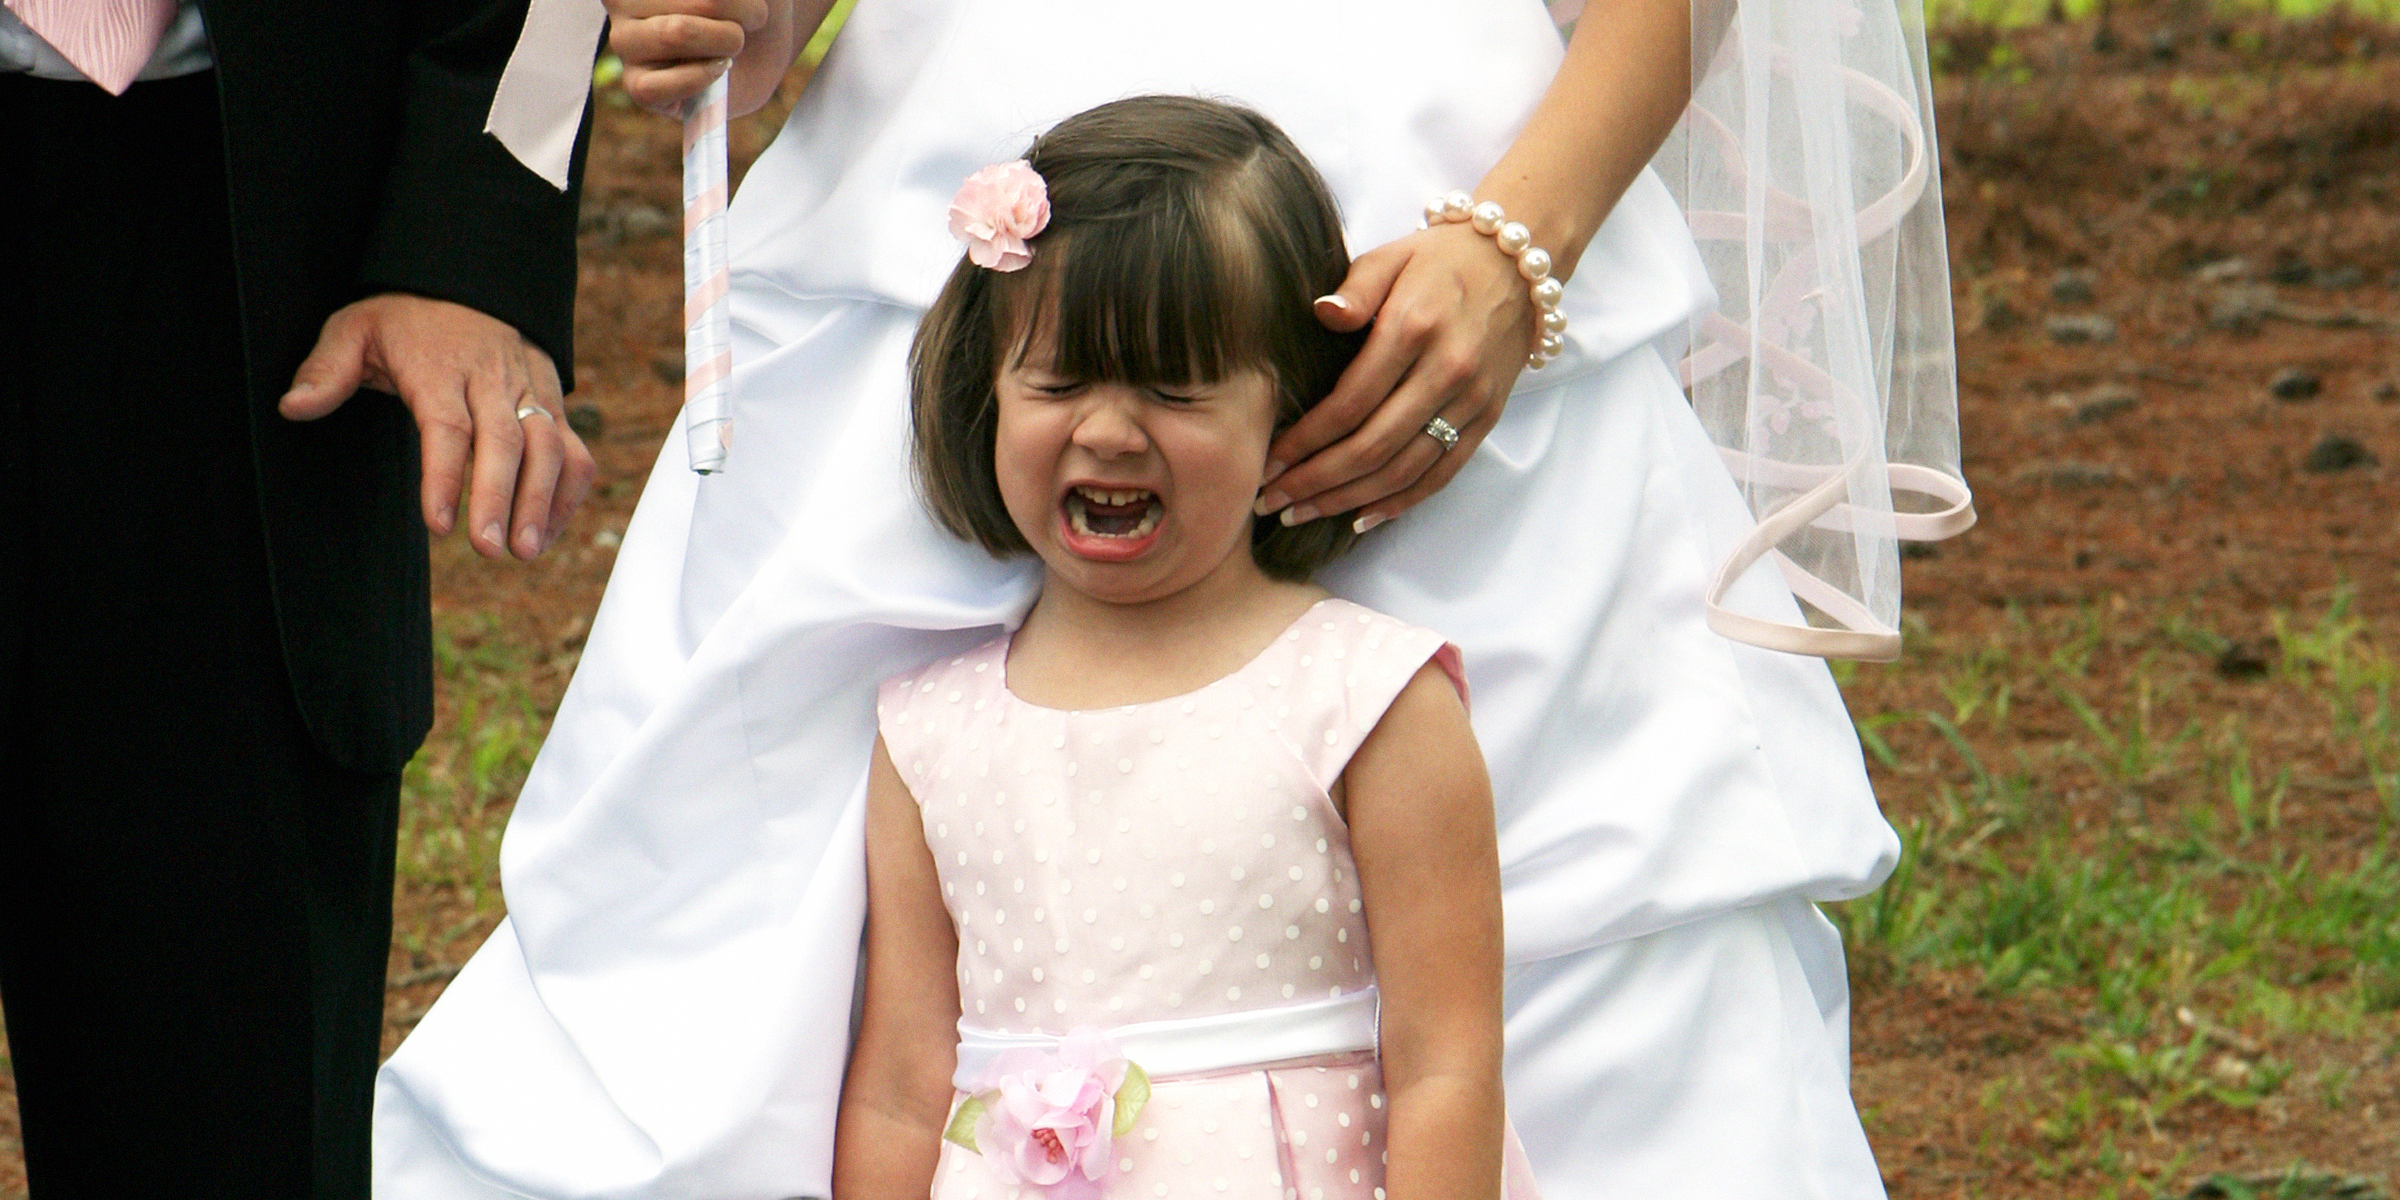 Una niña llorando durante una boda | Fuente: Getty Images